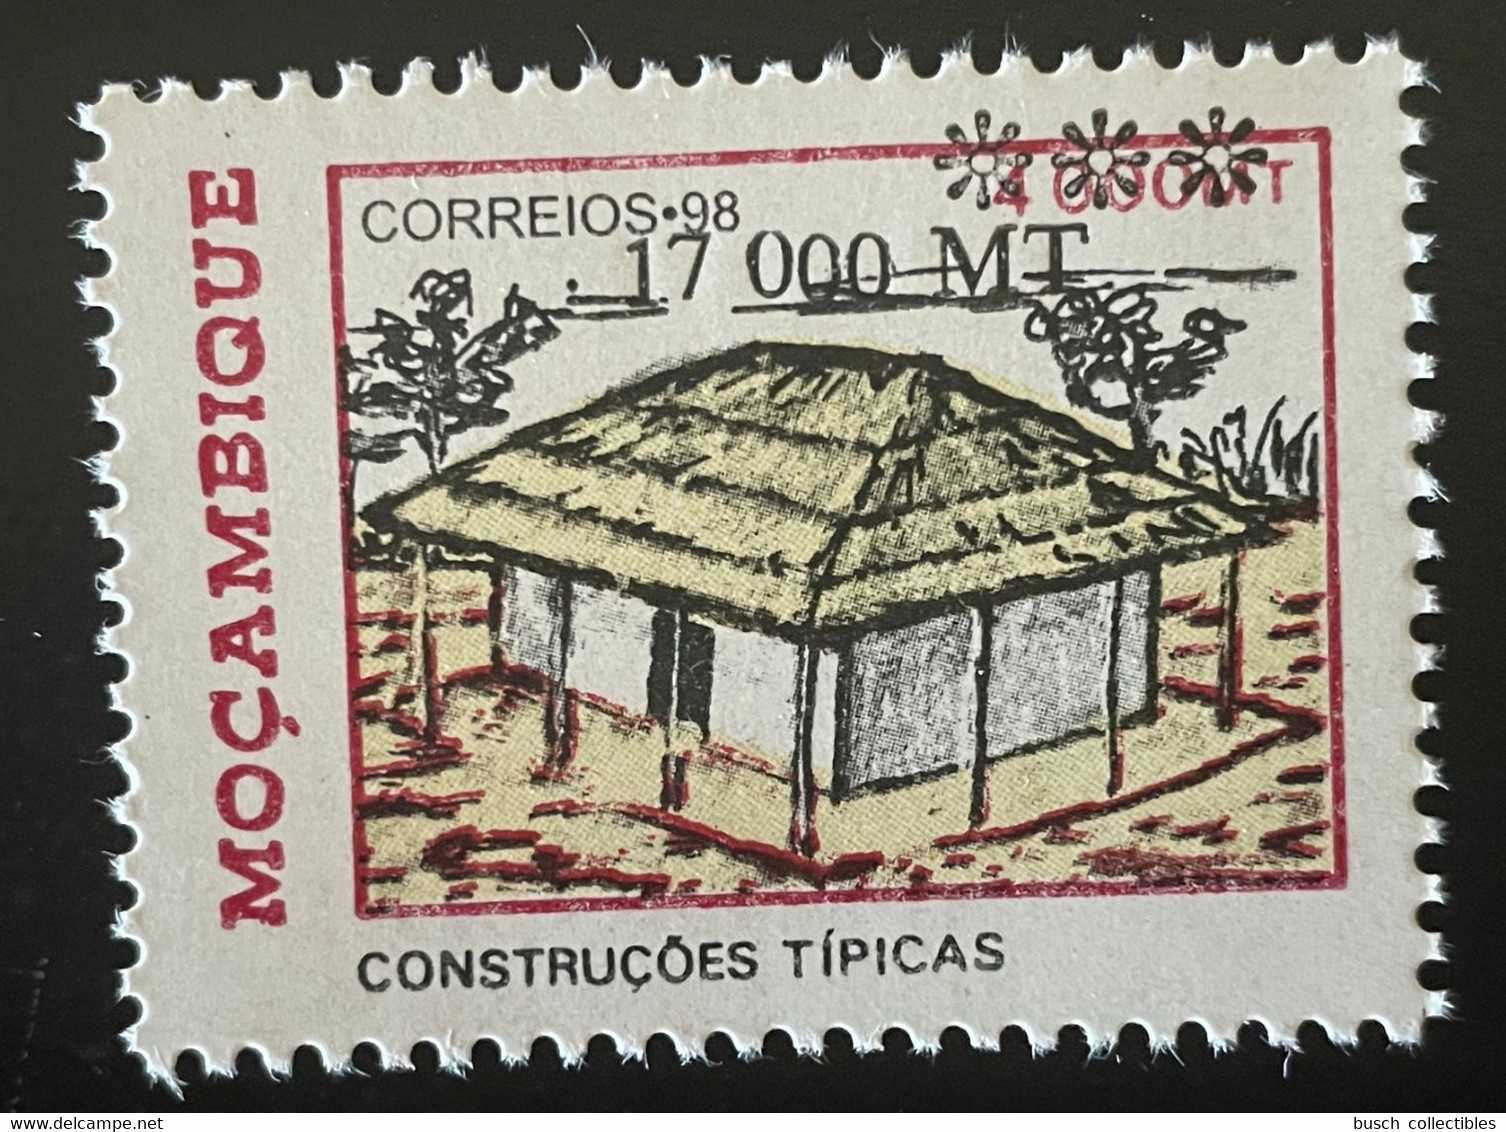 Moçambique Mozambique 1998 / 2000 Mi. B1567  - Construçoes Tipicas Wohnbauten Habitat Housing Overprint Surchargé RARE - Mosambik